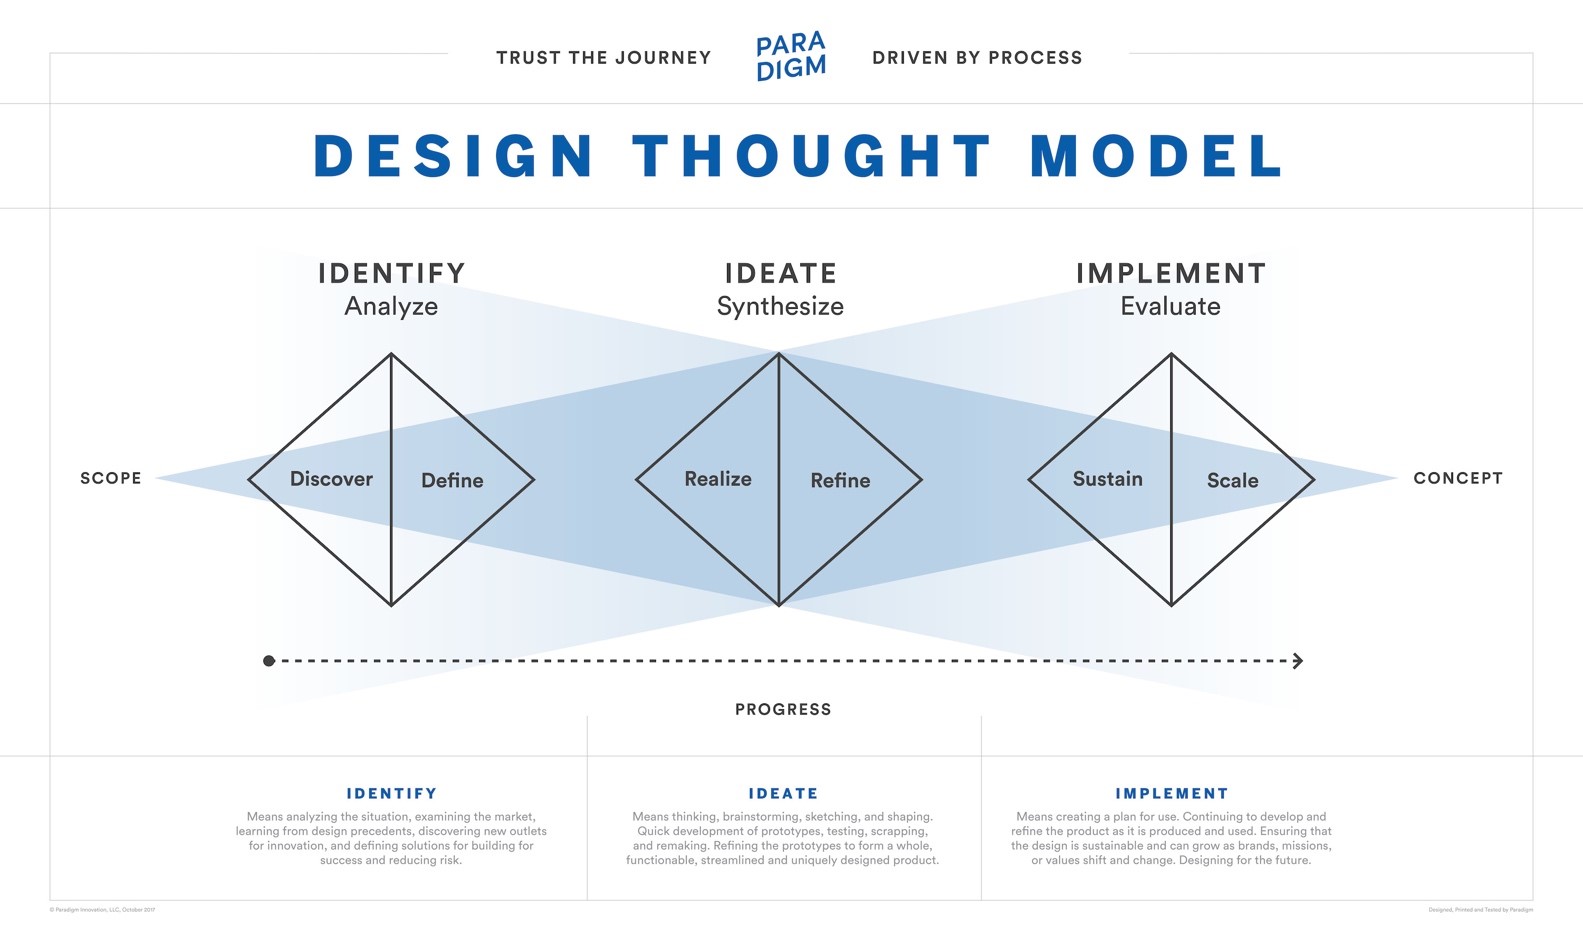 Paradigm's Design Process Model